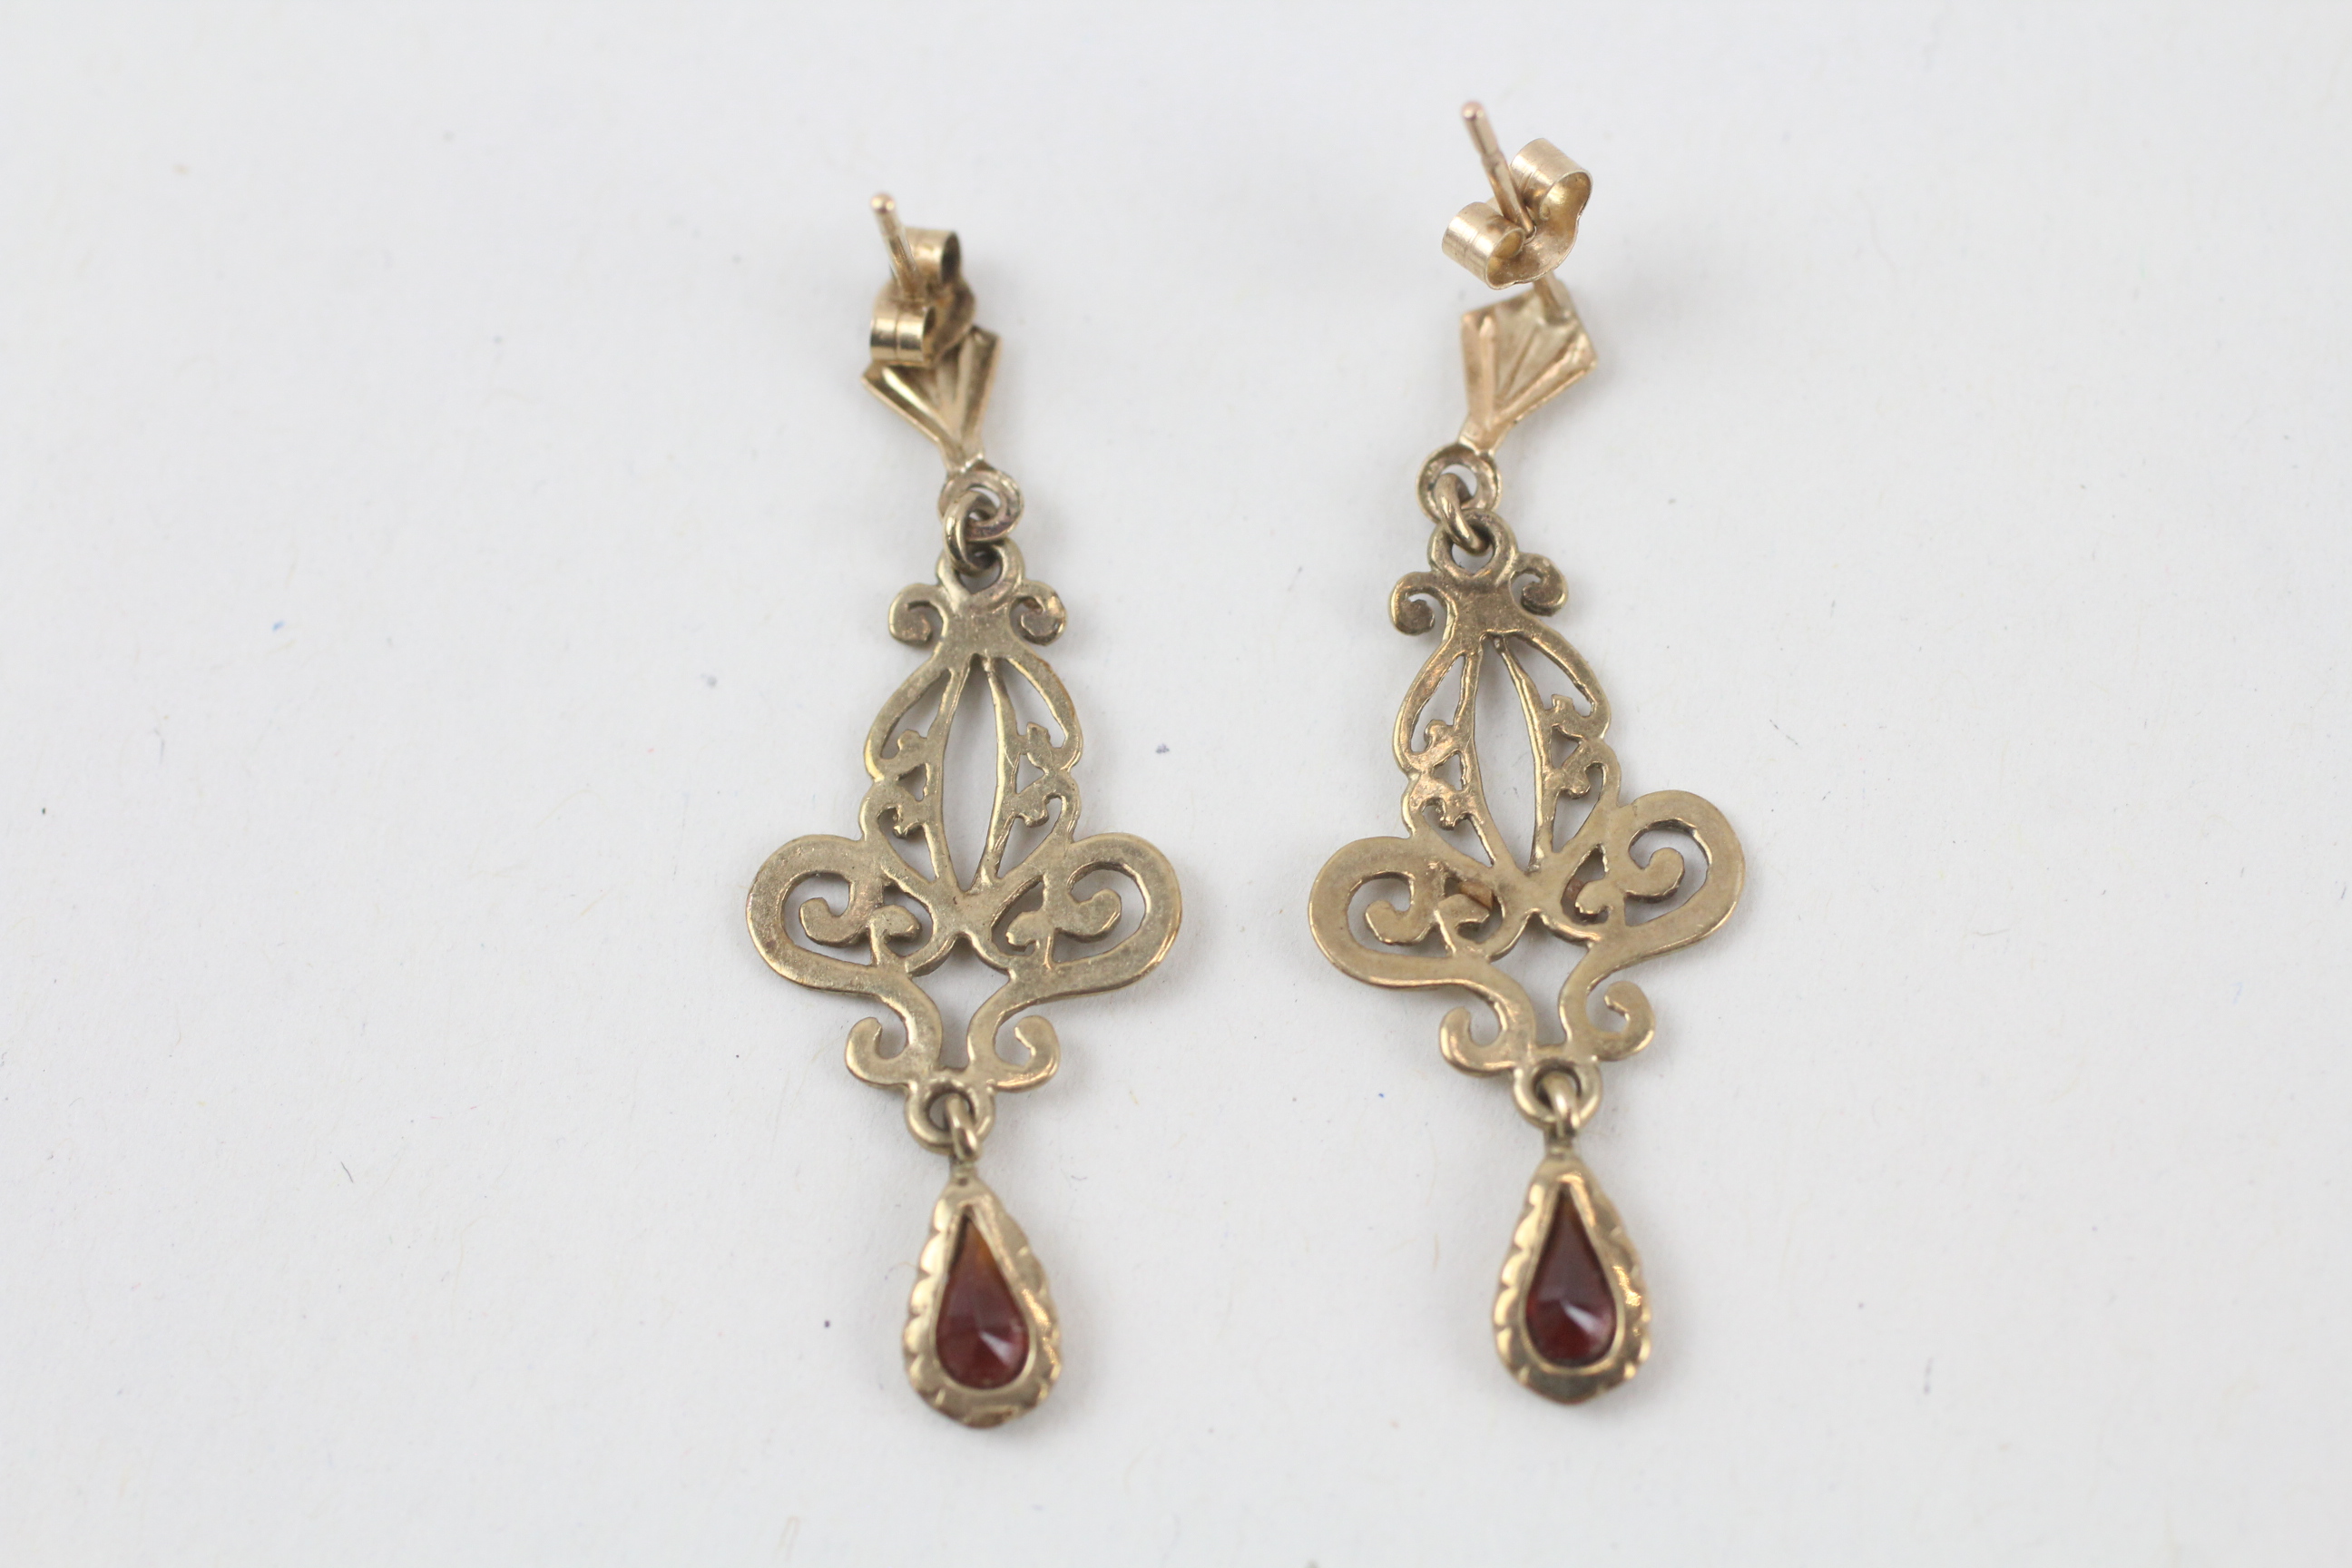 9ct gold garnet ornate dangle earrings - 1.6 g - Image 5 of 8